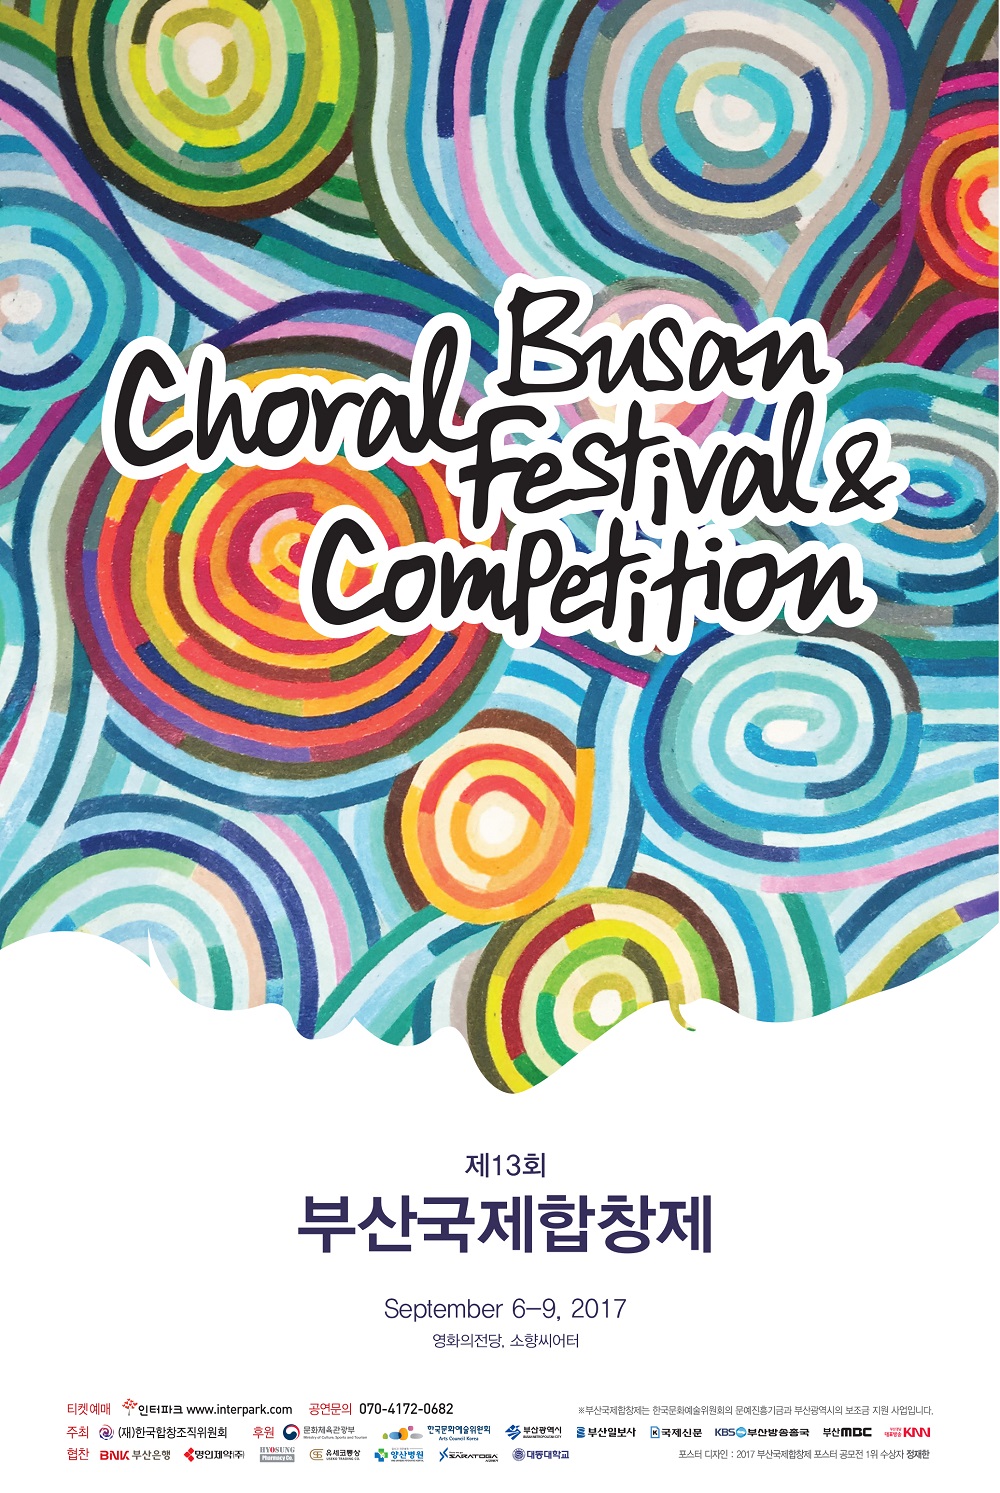 「2017 제13회 부산국제합창제(Busan Choral Festival&Competition)」 개최 알림